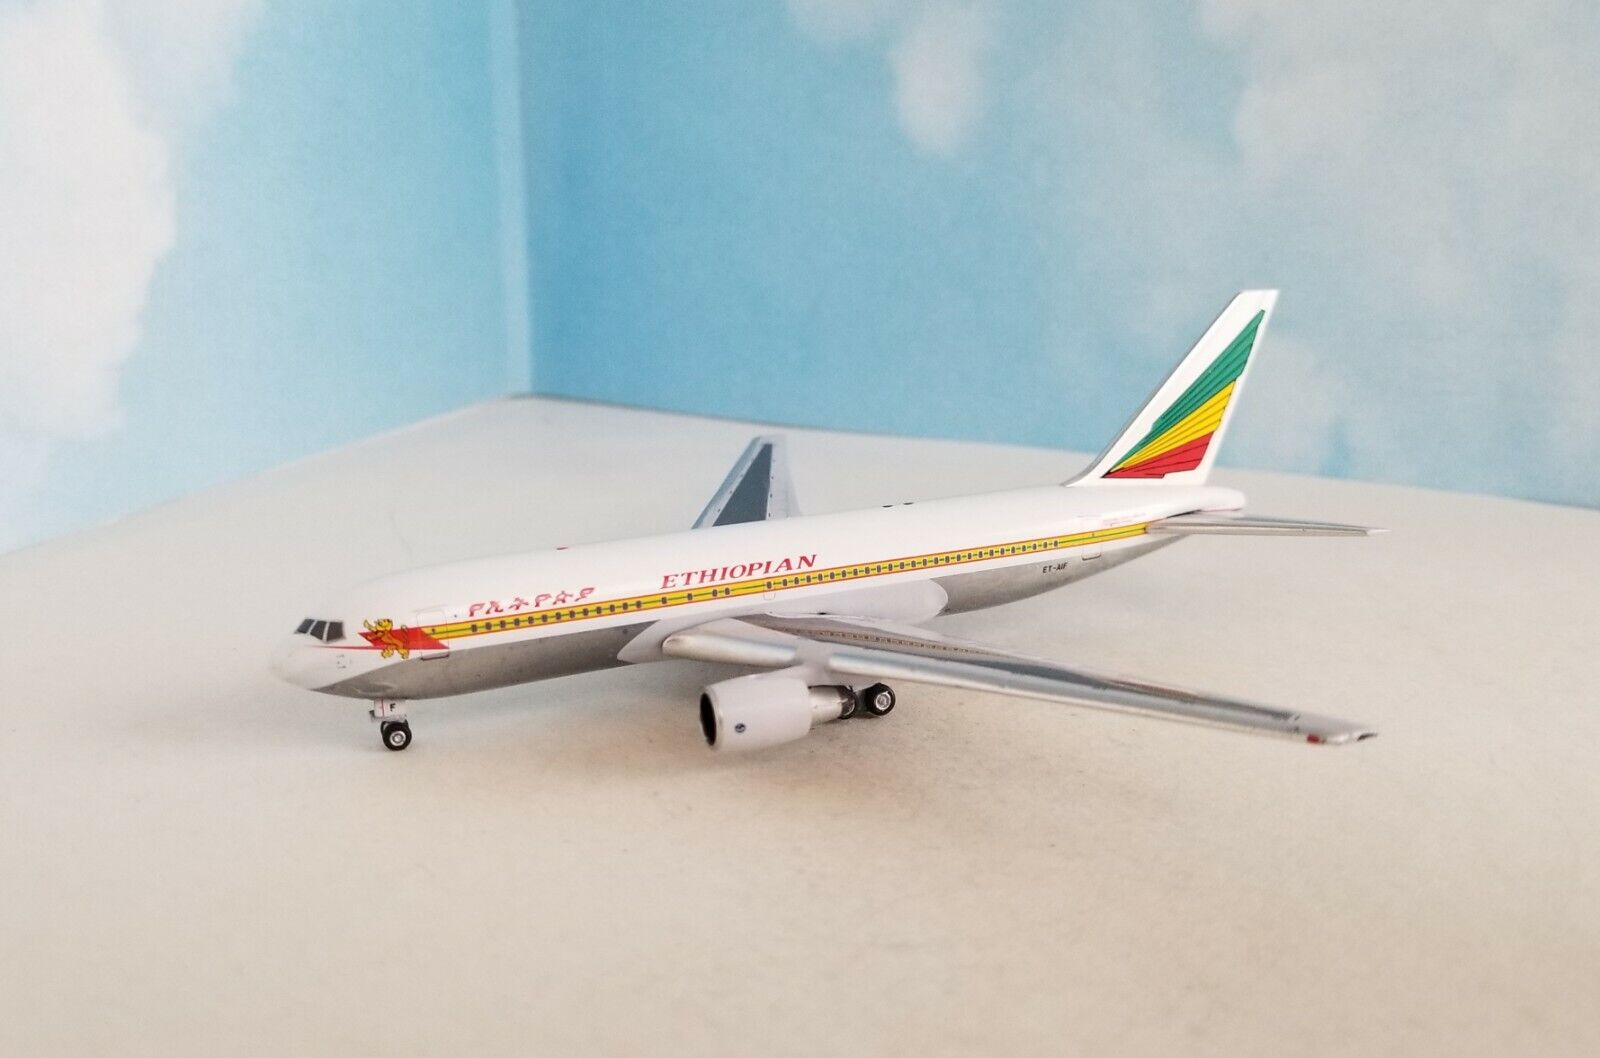 AeroClassics ** RARE ** 1:400 Scale  ETHIOPIAN AIRWAYS  BOEING 767-200, ET-AIF  